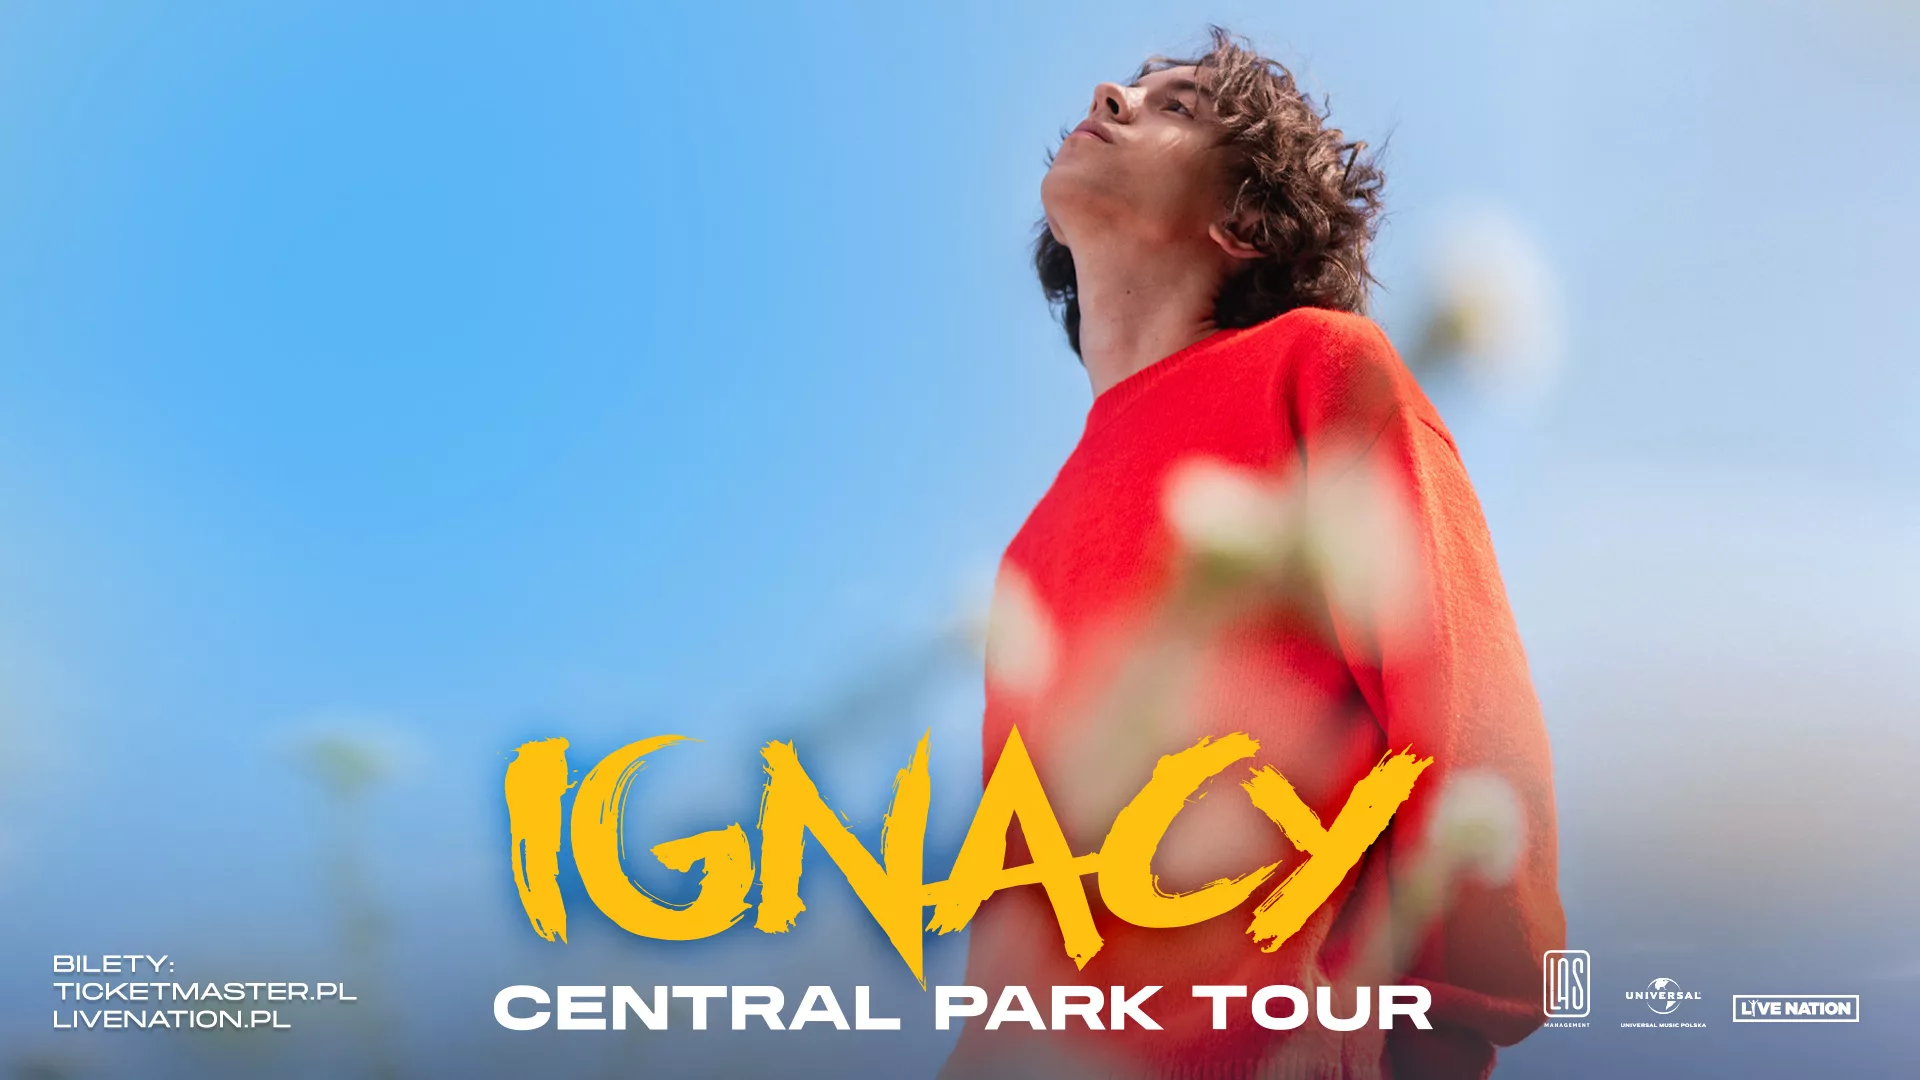 Ignacy Central Park